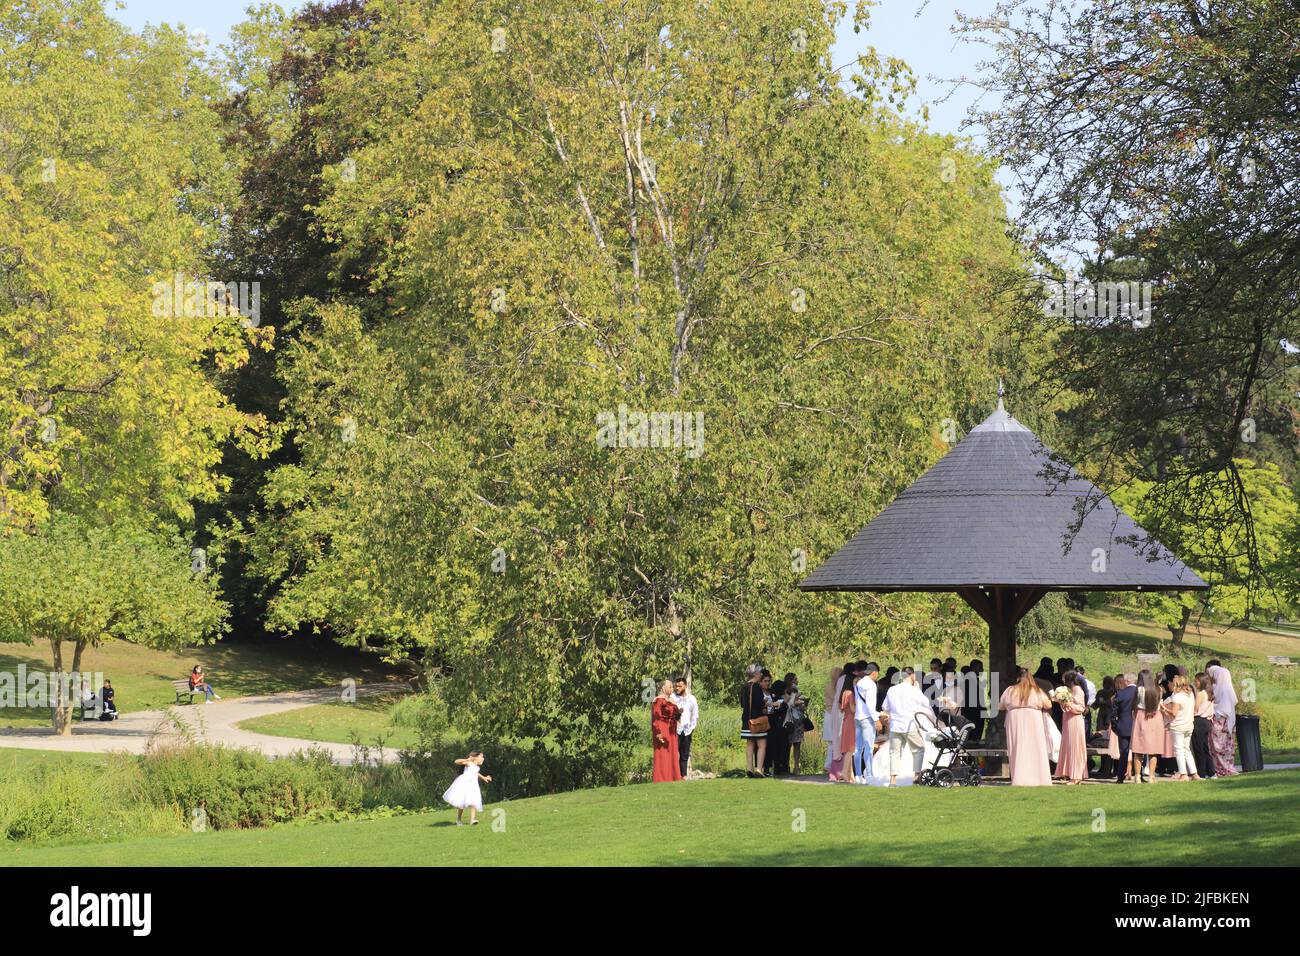 Francia, Norte, Roubaix, Barbieux parque del paisajista Barillet-Deschamps diseñado a finales del siglo 19th, la boda en un quiosco Foto de stock